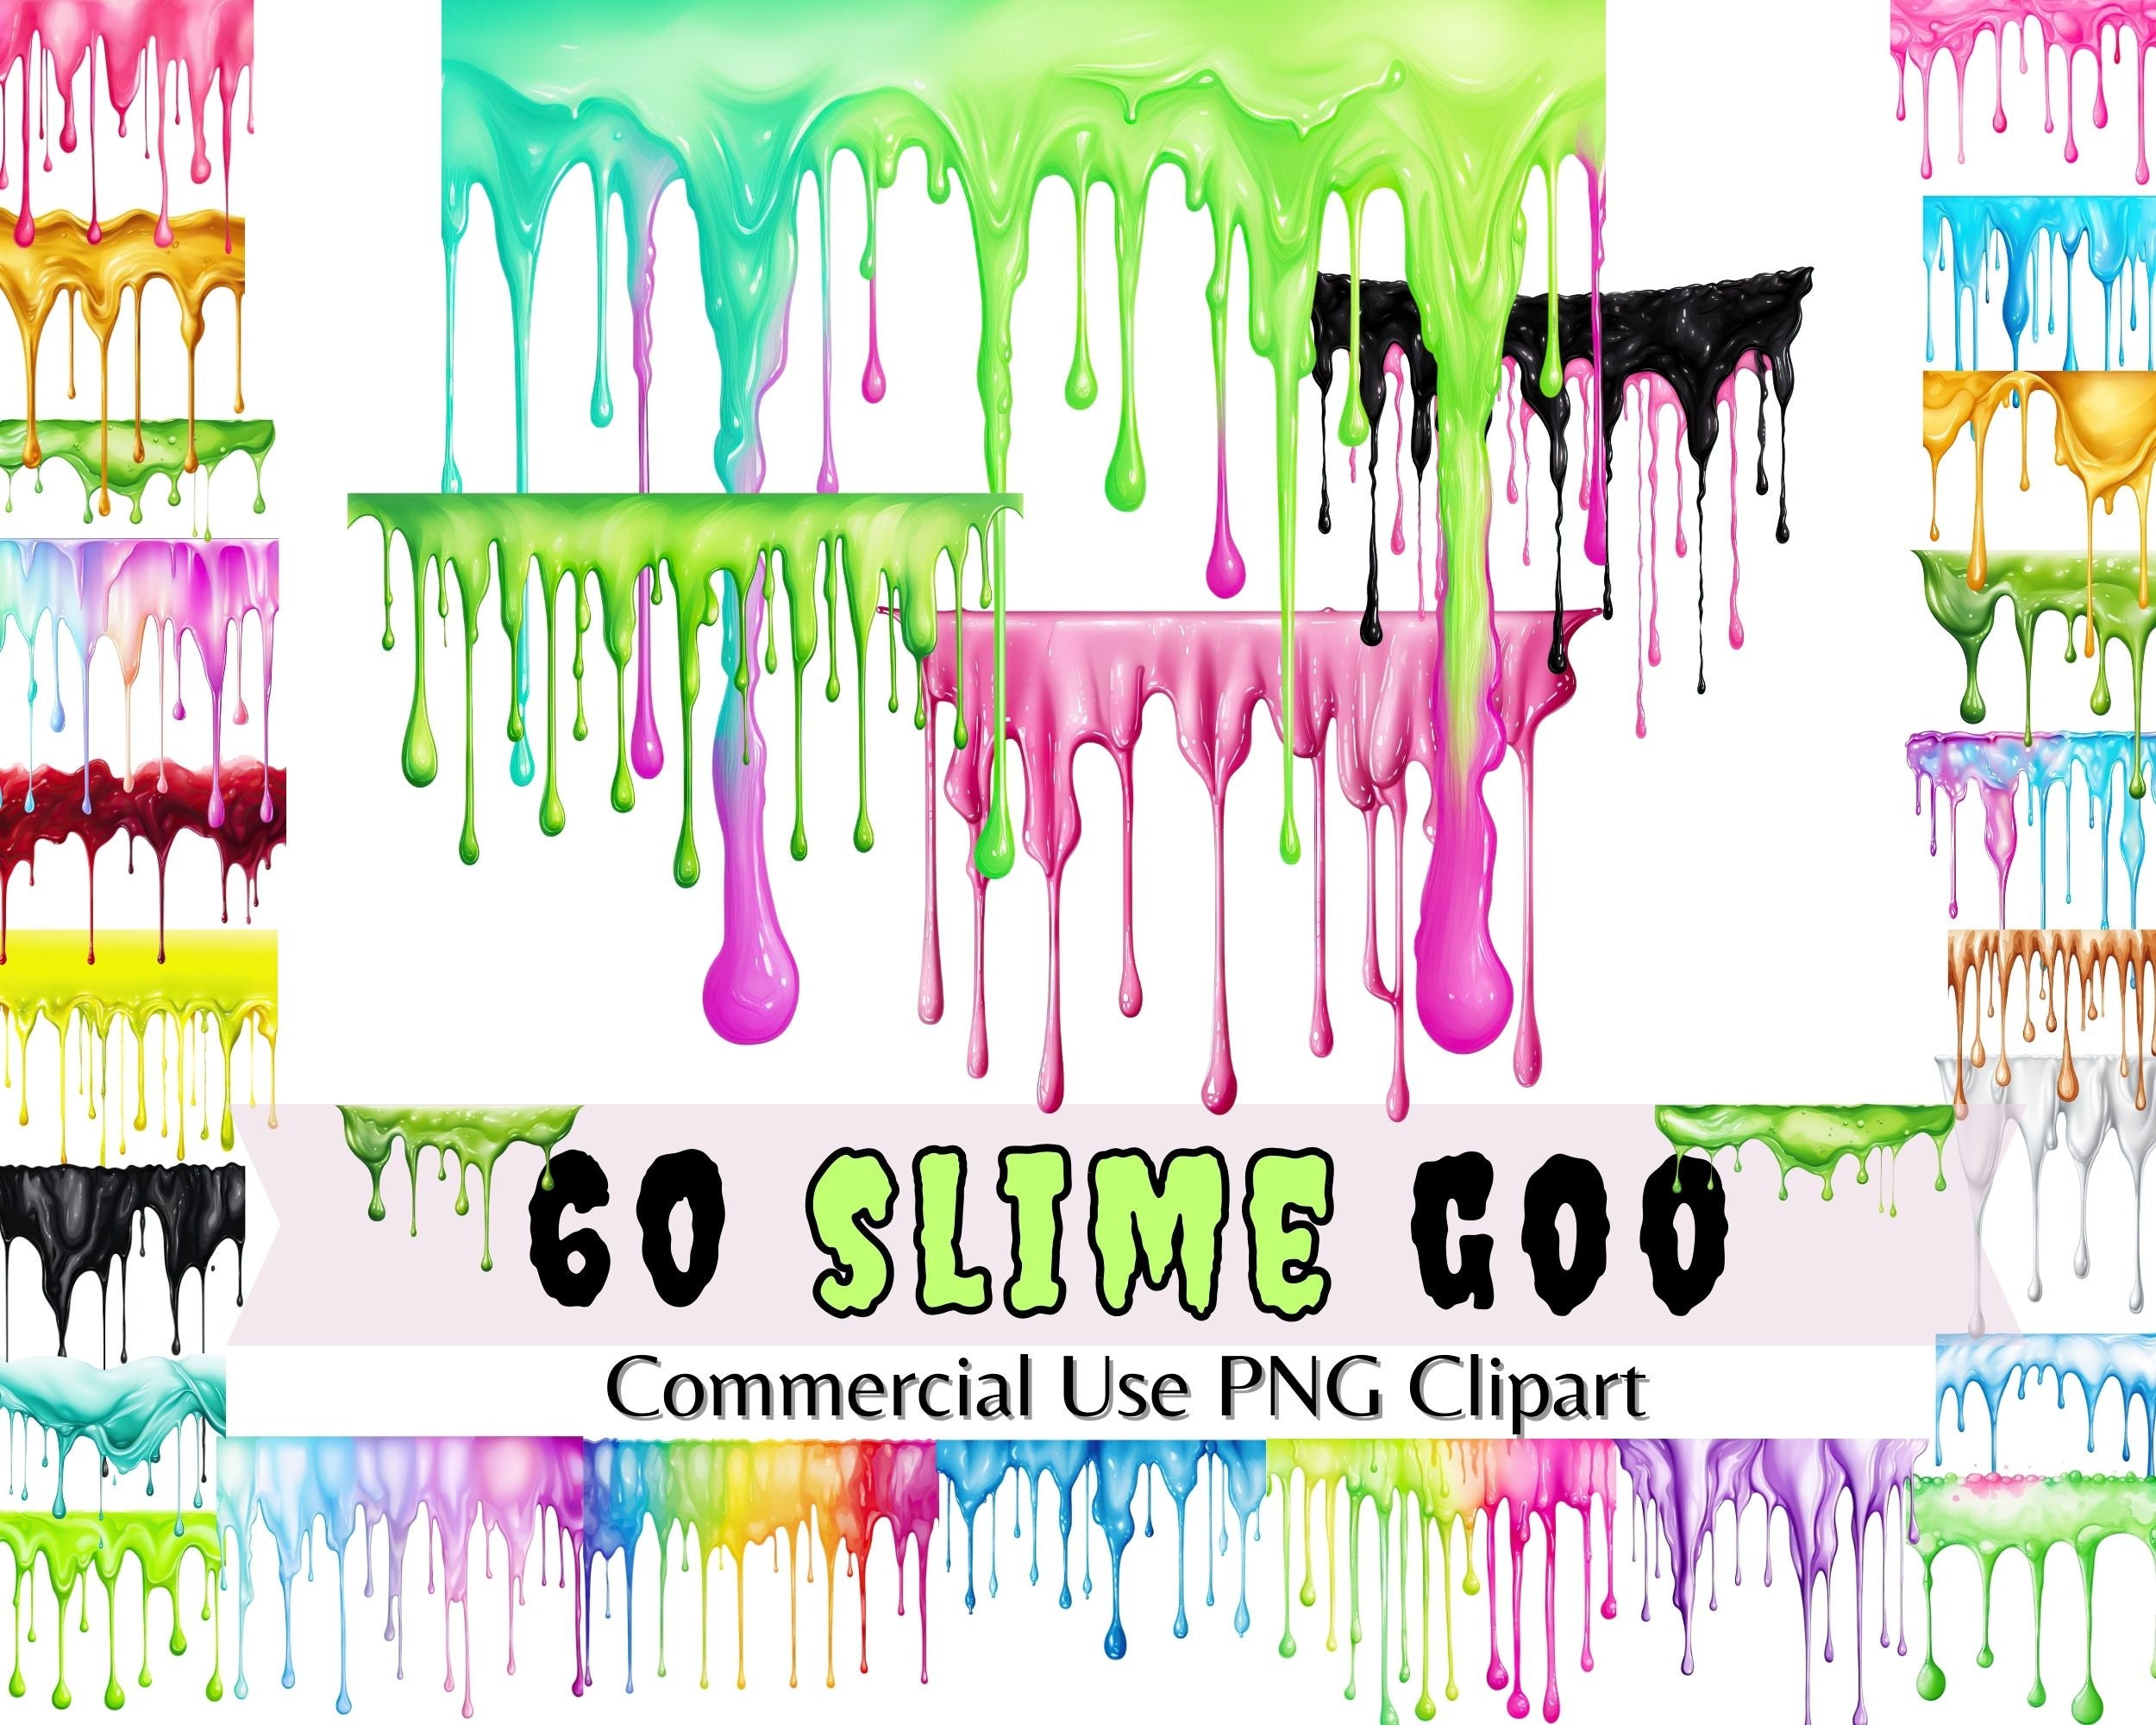 Slime Obsessed SVG Slime Kids Funny Boy Girl T-shirt Design Slime Maker SVG  Hand Lettered SVG Blot and Ink Digital Download Cut File 